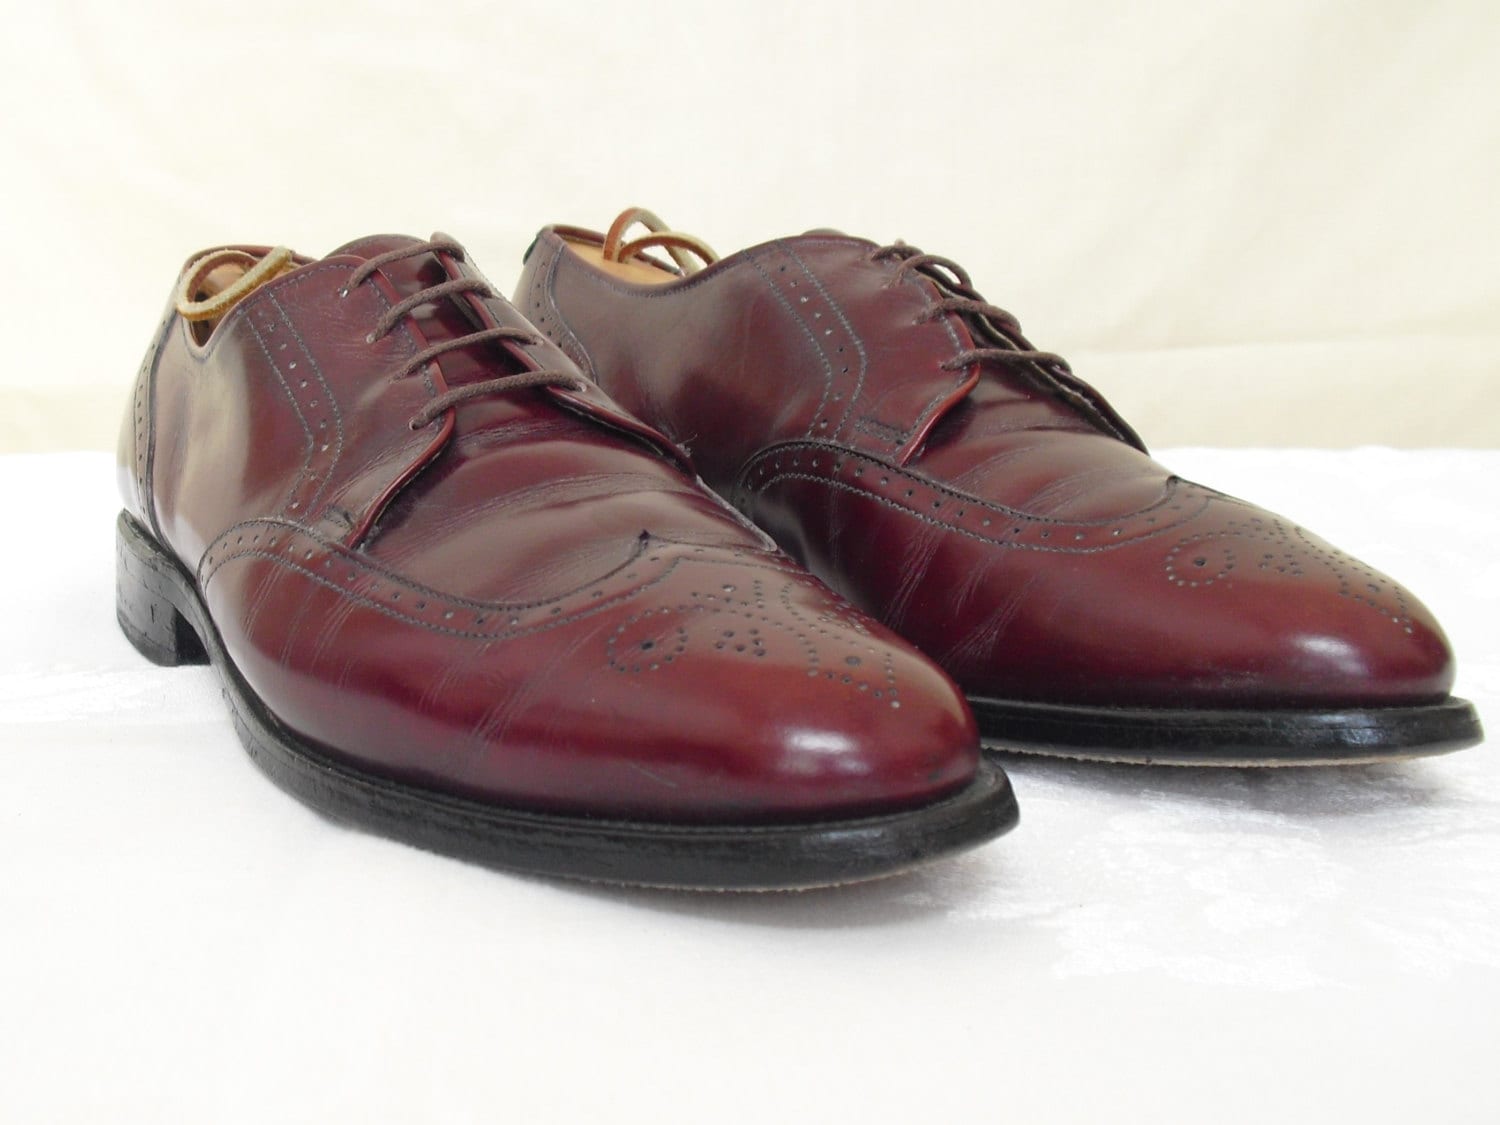 Vintage Burgundy Allen Edmonds Shoes Kingswood Oxford Shoes